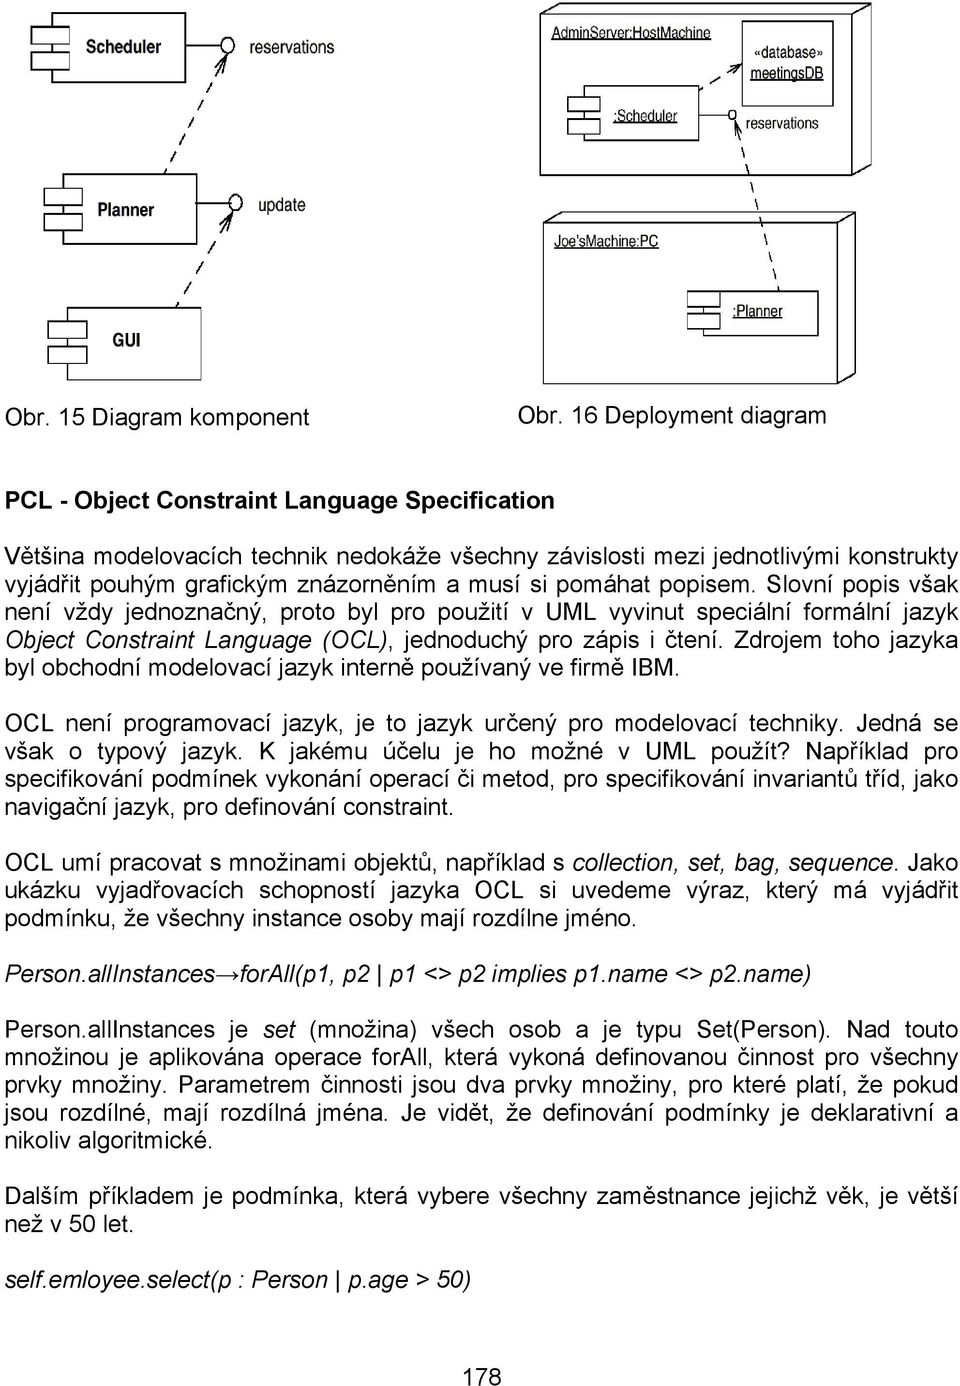 si pomáhat popisem. Slovní popis však není vždy jednoznačný, proto byl pro použití v UML vyvinut speciální formální jazyk Object Constraint Language (OCL), jednoduchý pro zápis i čtení.